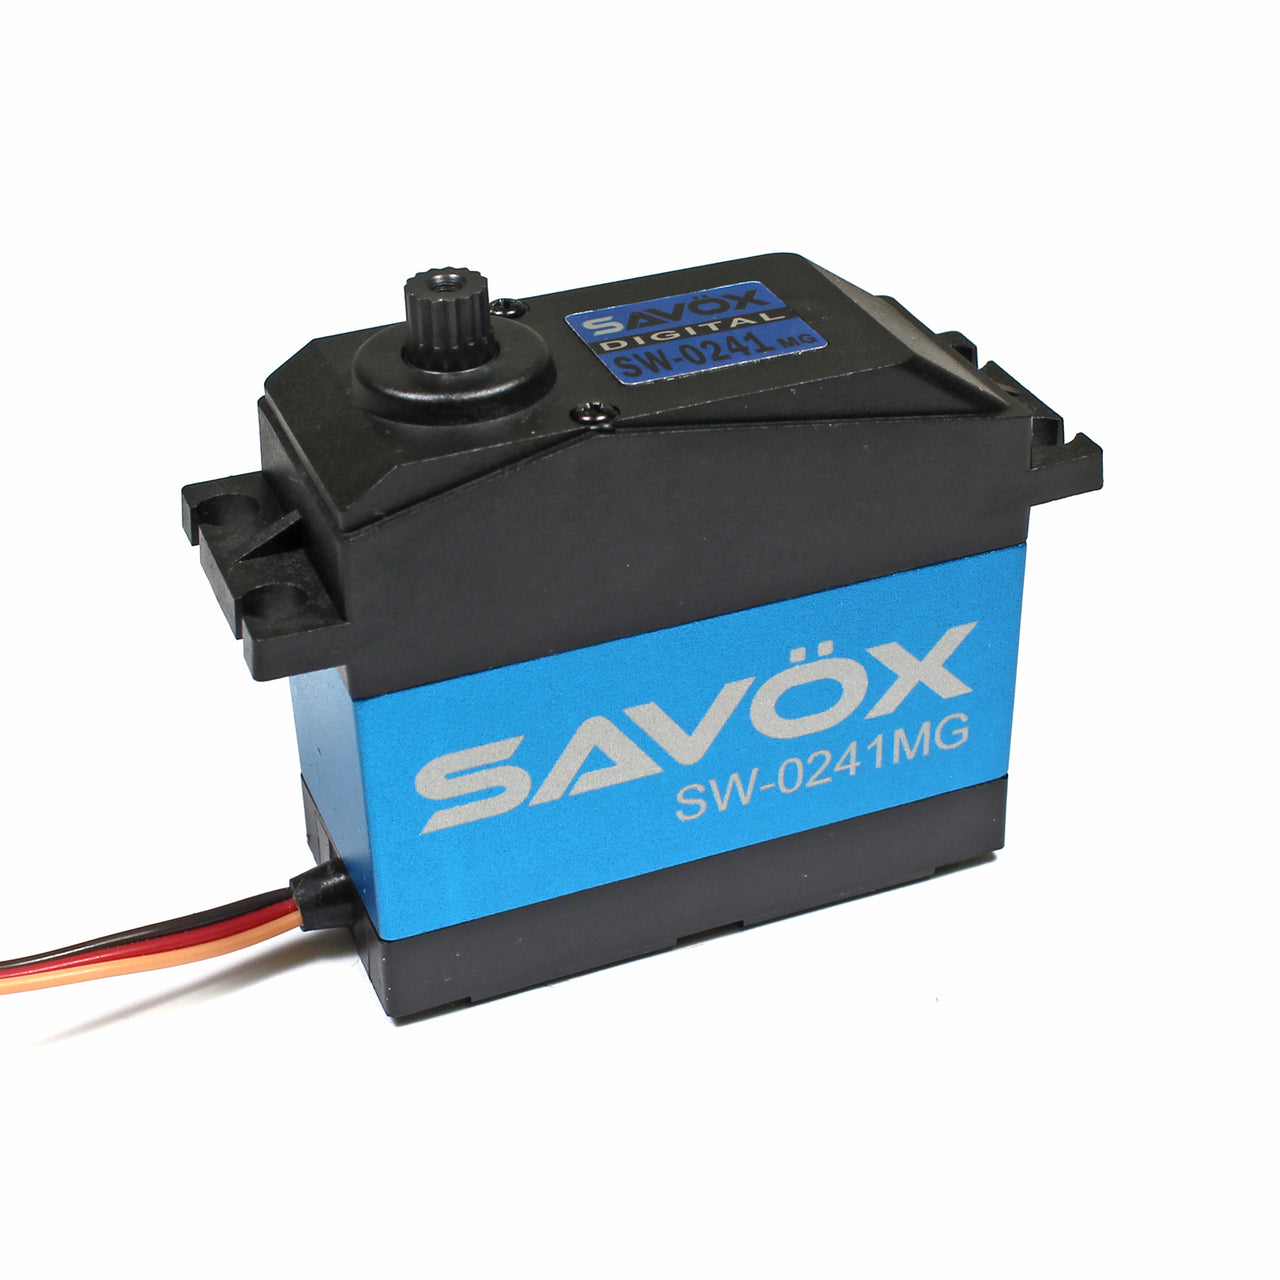 SAVSW0241MG Servo digital resistente al agua de escala 1/5 0,17 s/555 oz a 7,4 V